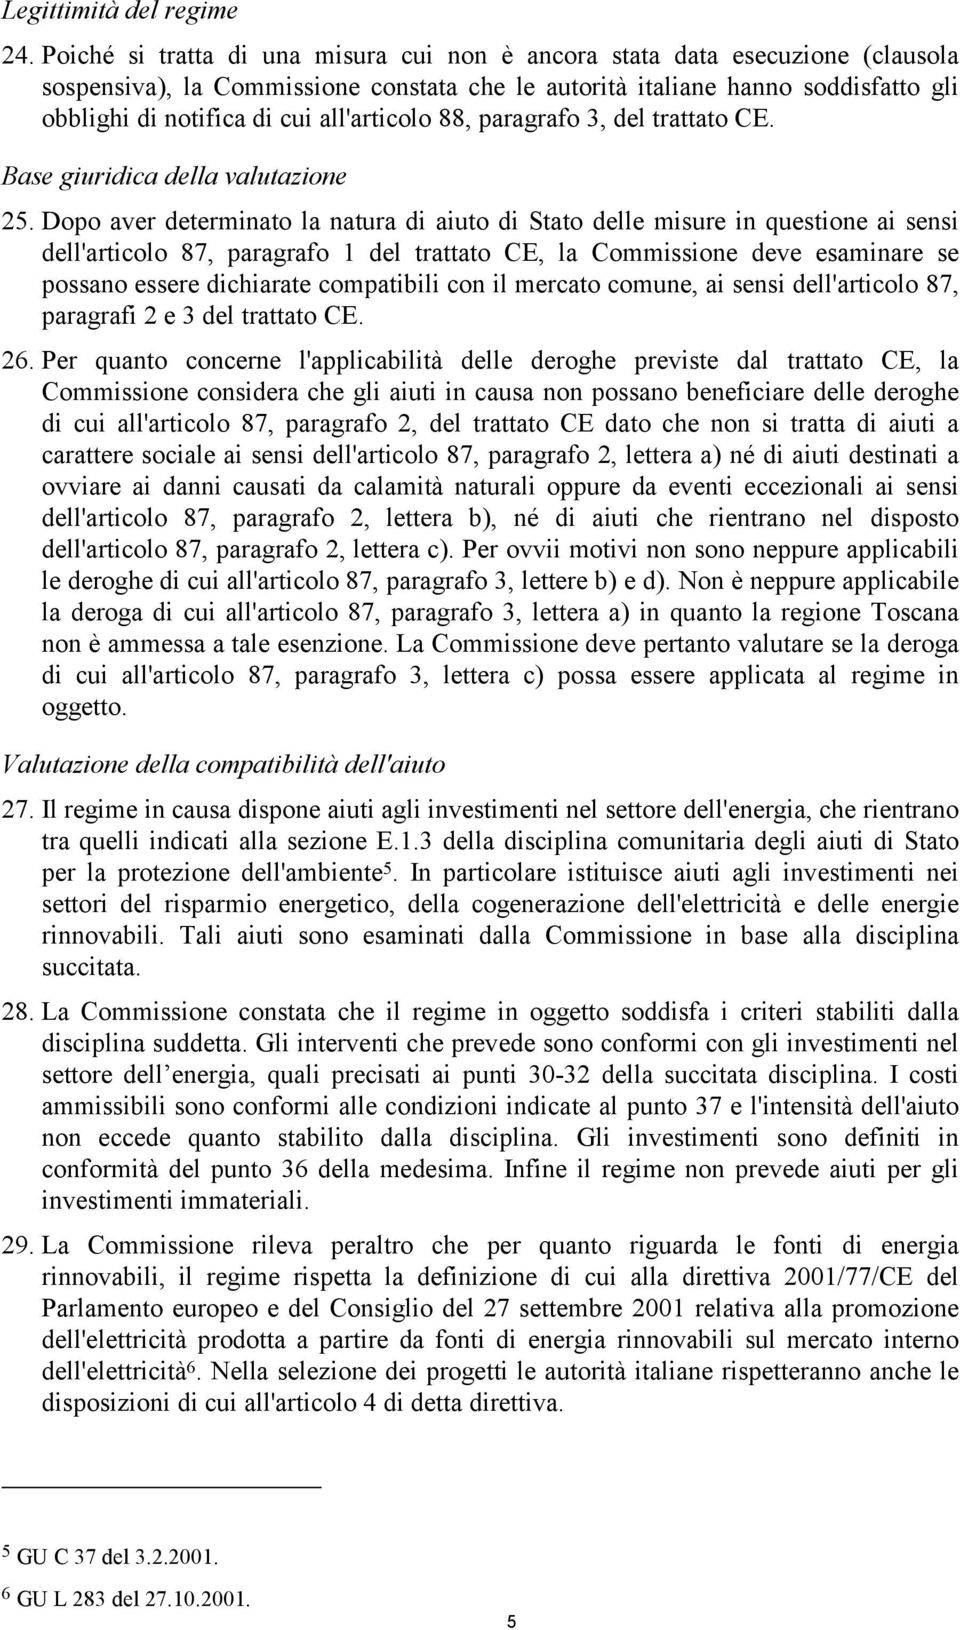 all'articolo 88, paragrafo 3, del trattato CE. Base giuridica della valutazione 25.